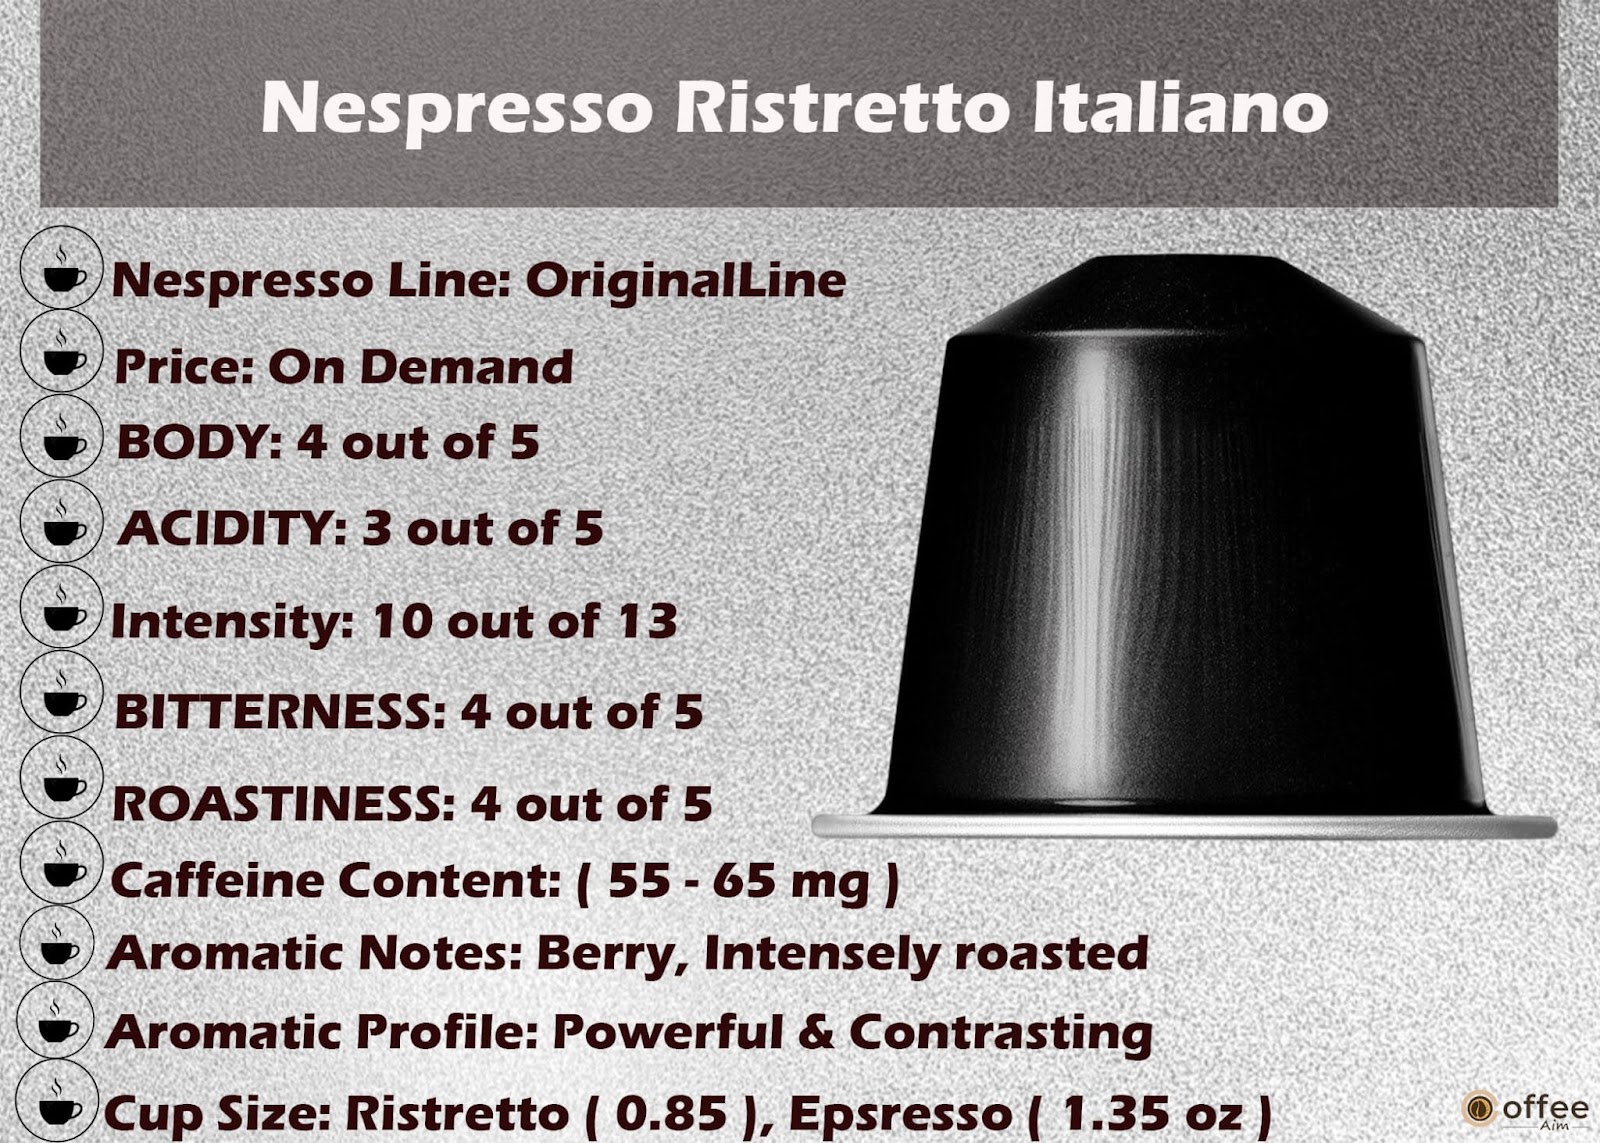 Features Chart of Nespresso Ristretto Italiano Original Line Capsule.